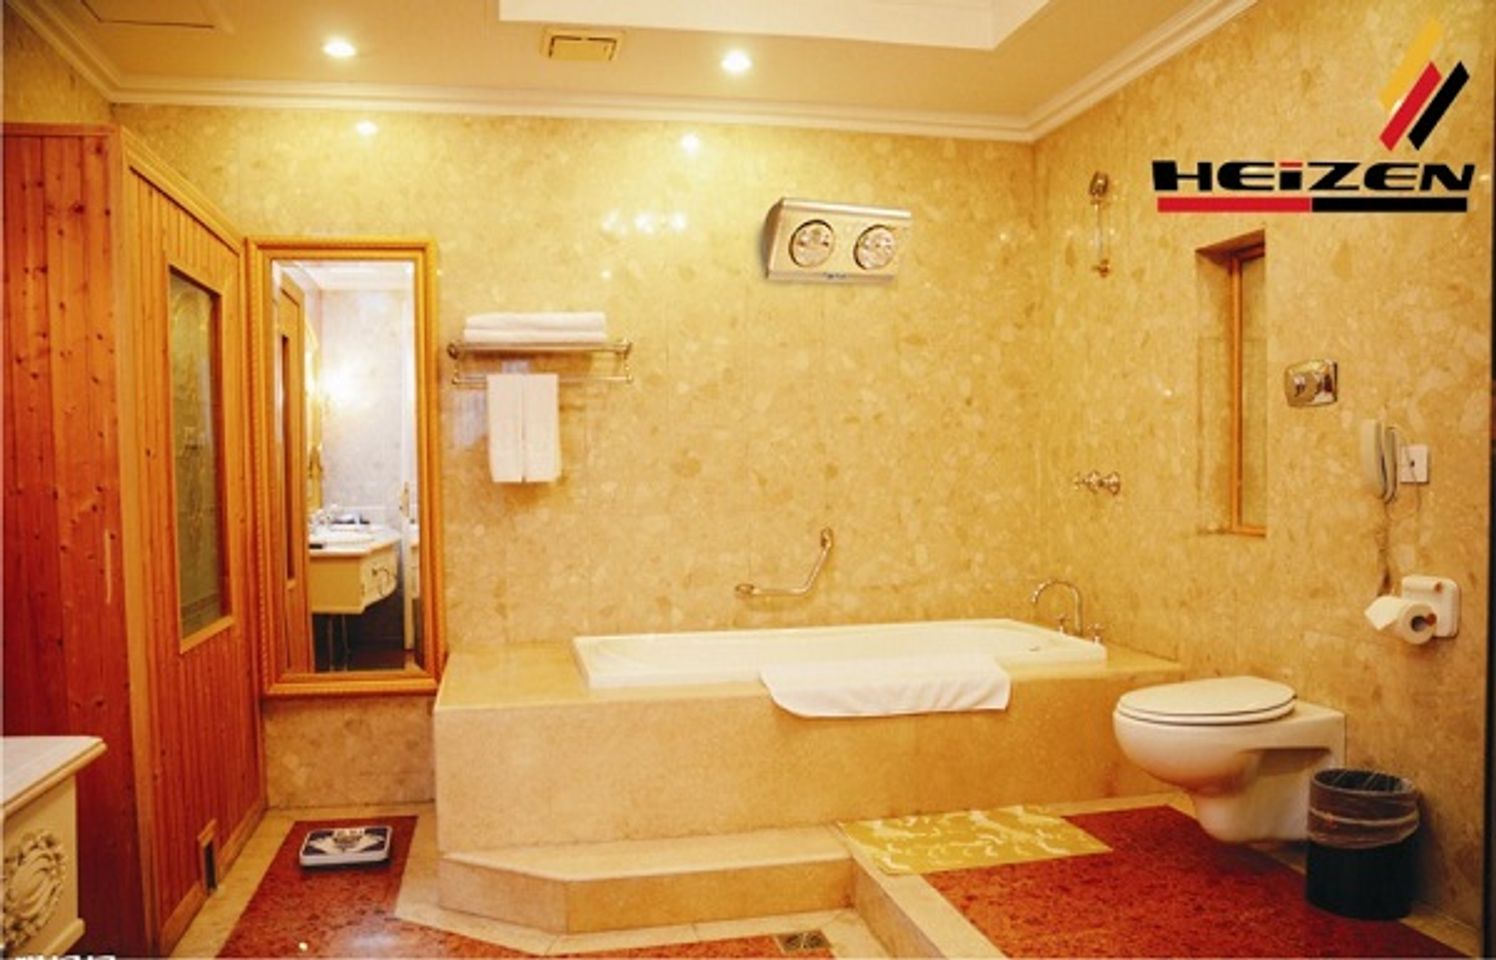 Đèn sưởi nhà tắm Heizen làm ấm nhanh, tự điều chỉnh nhiệt độ khi quá nóng